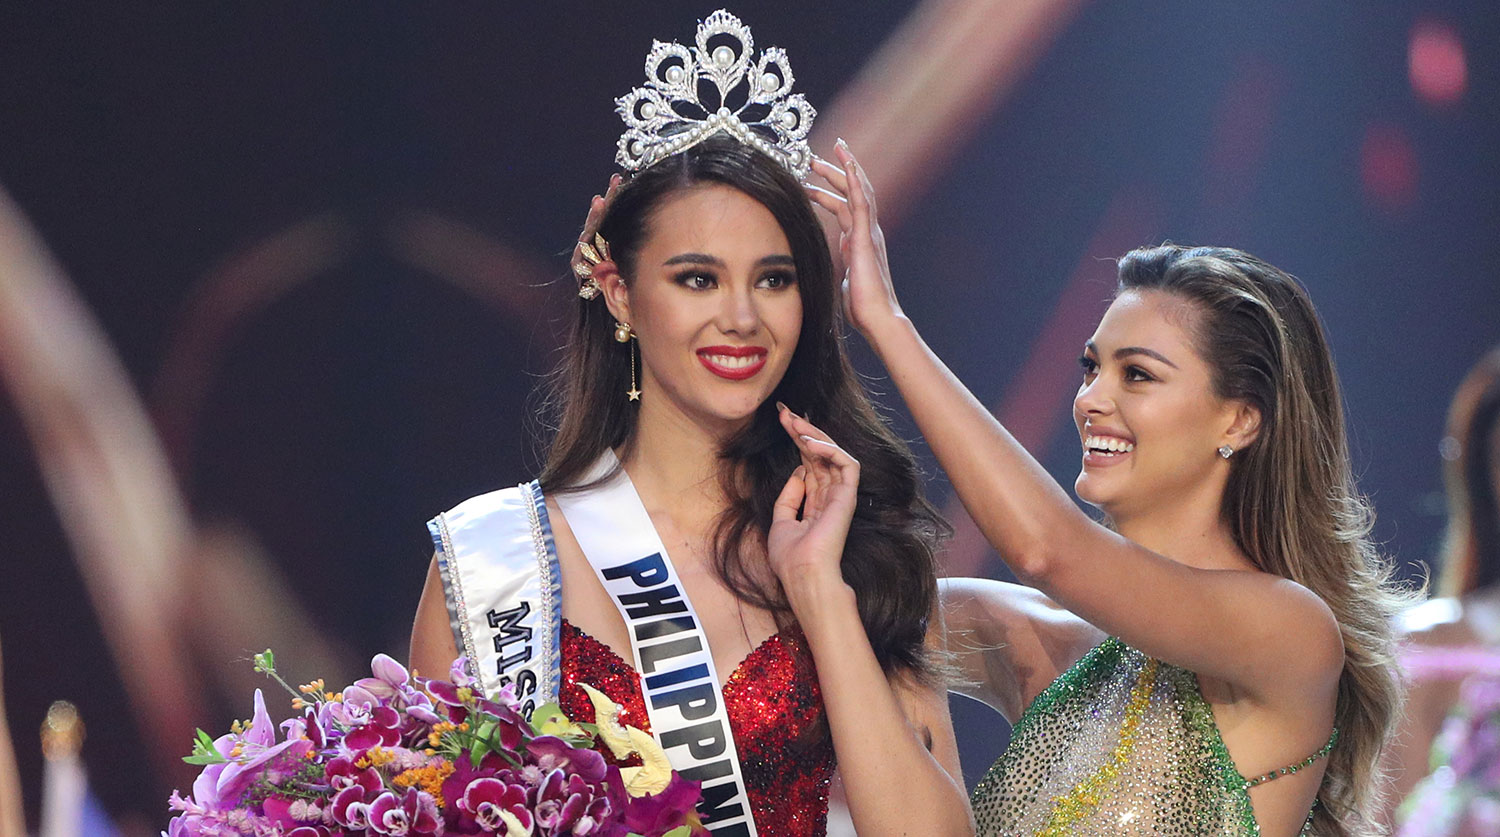 Miss. Мисс Вселенная 2018 победительница. Мисс Вселенная Филиппины 2018 Катриона грей. Катриона грей Мисс Вселенная. Мисс Вселенная филиппинка.